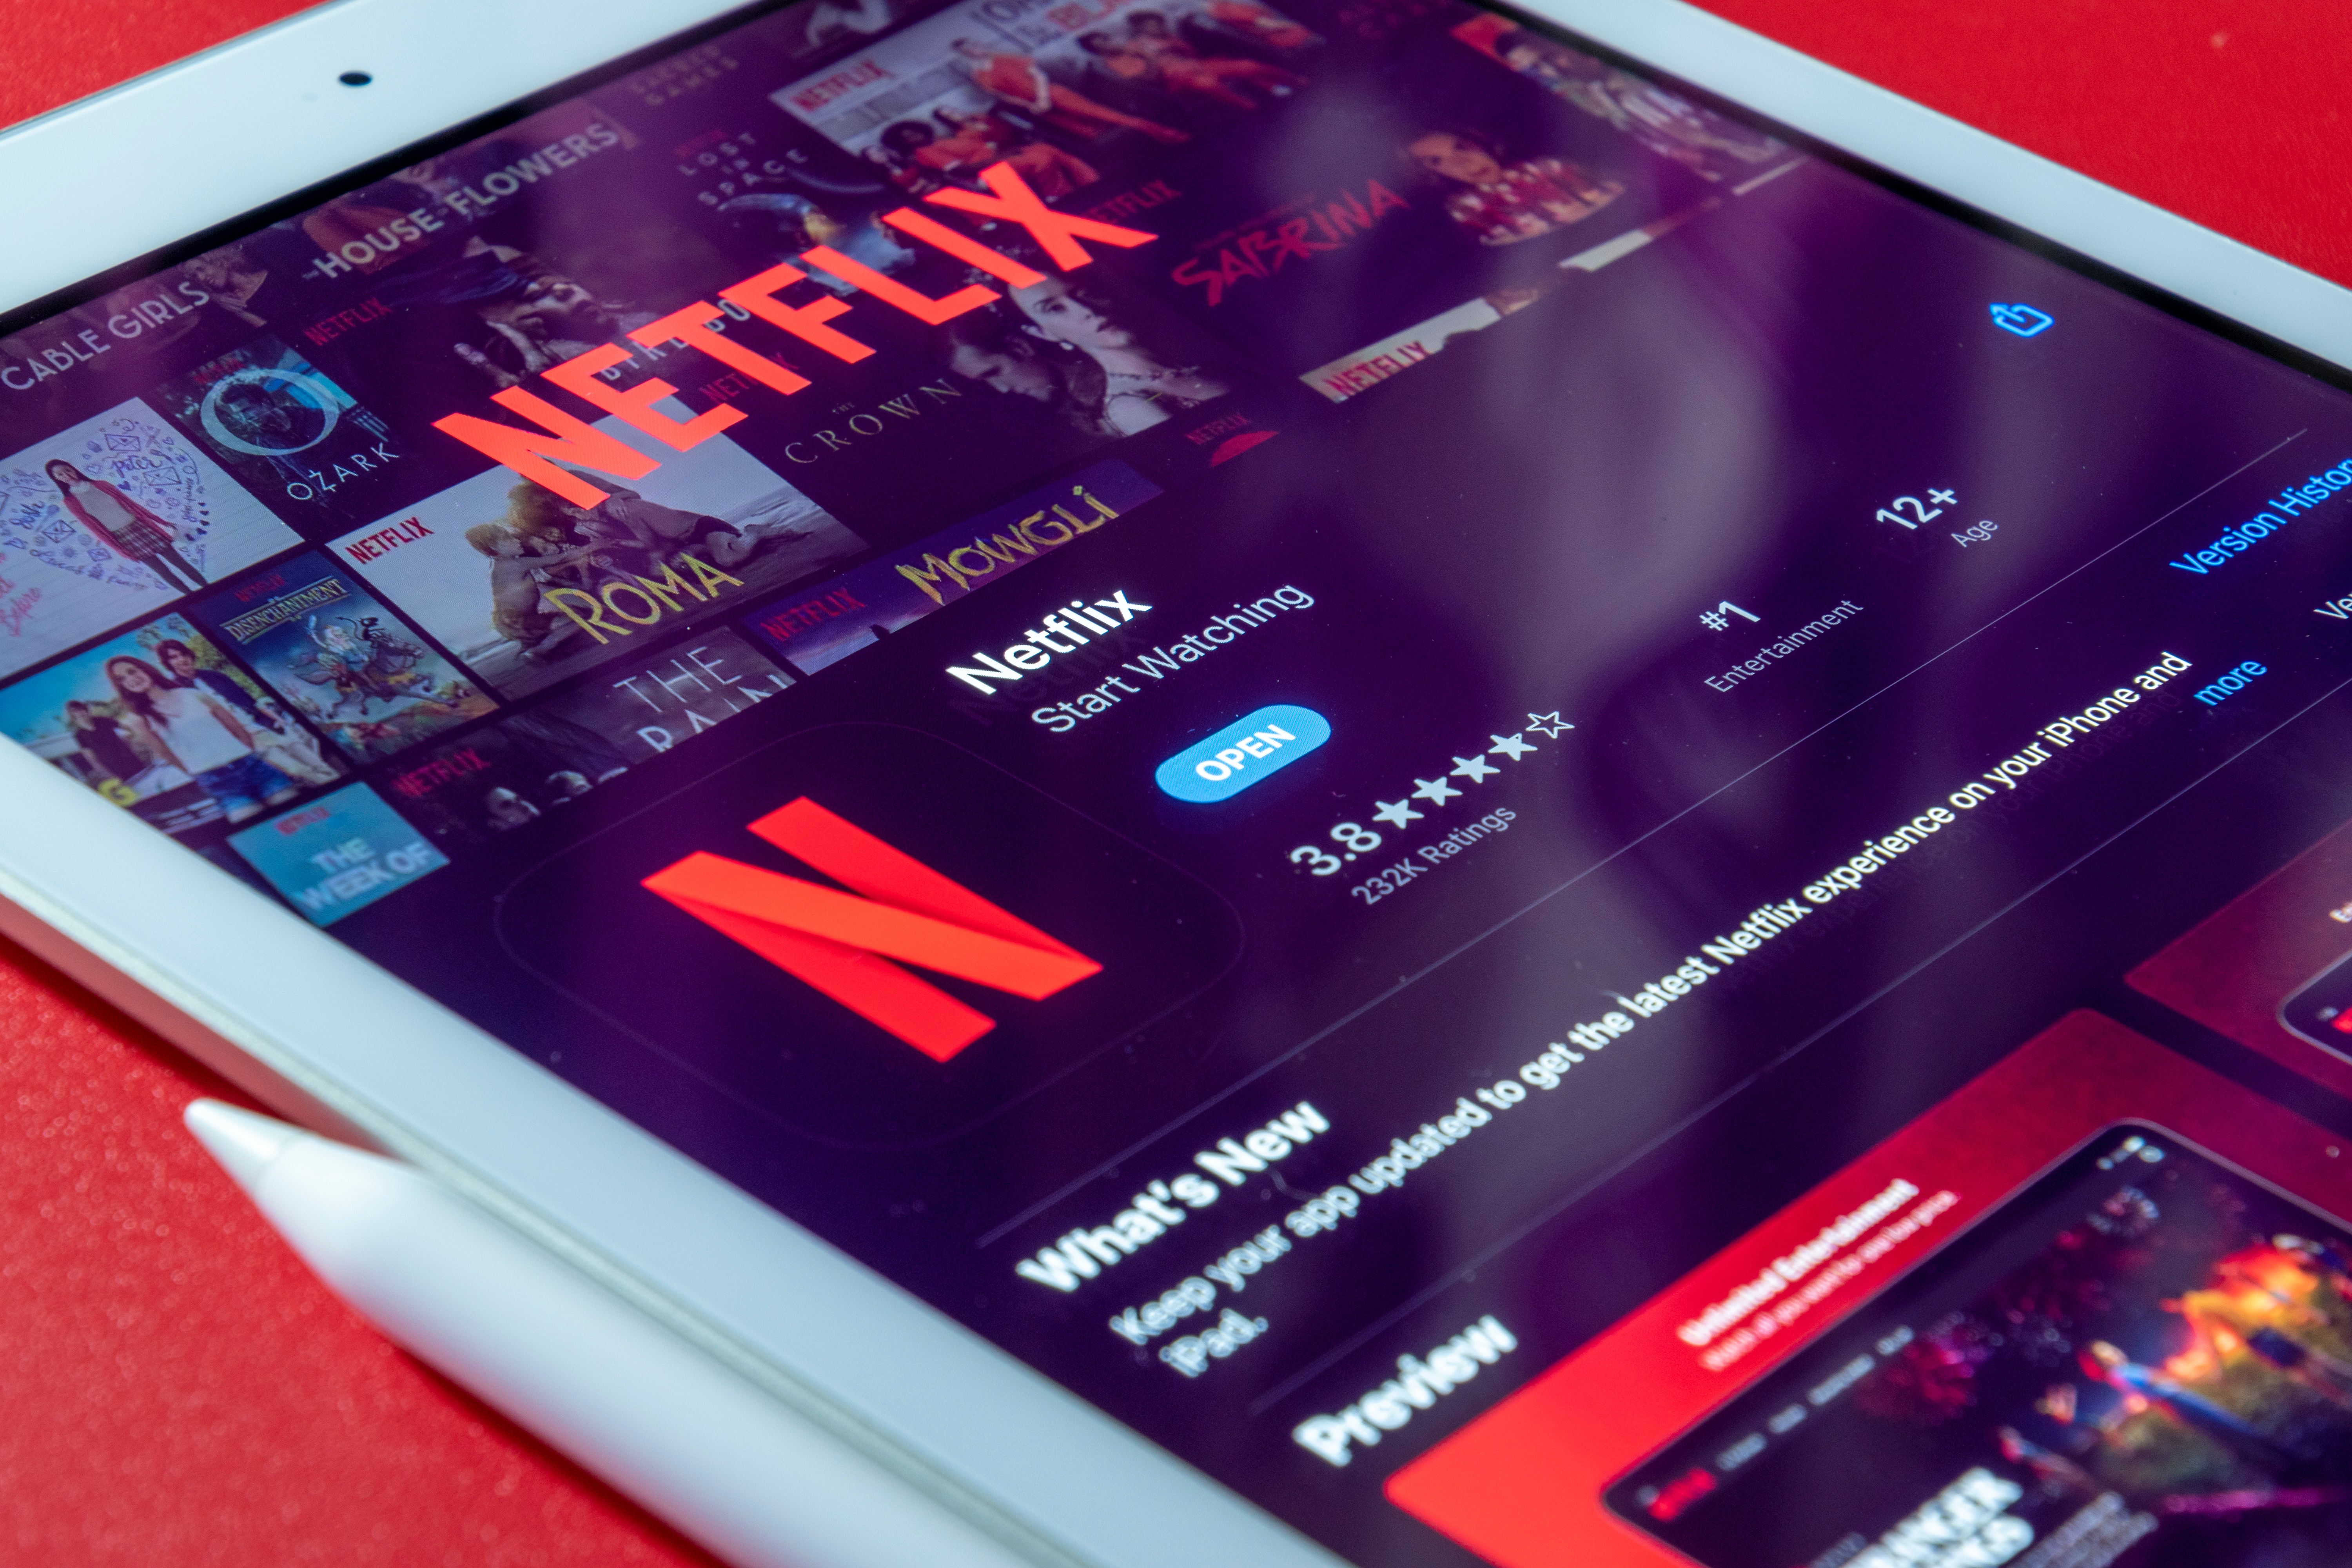 El plan barato de Netflix no estará disponible en todos los dispositivos. Aquí la lista completa.